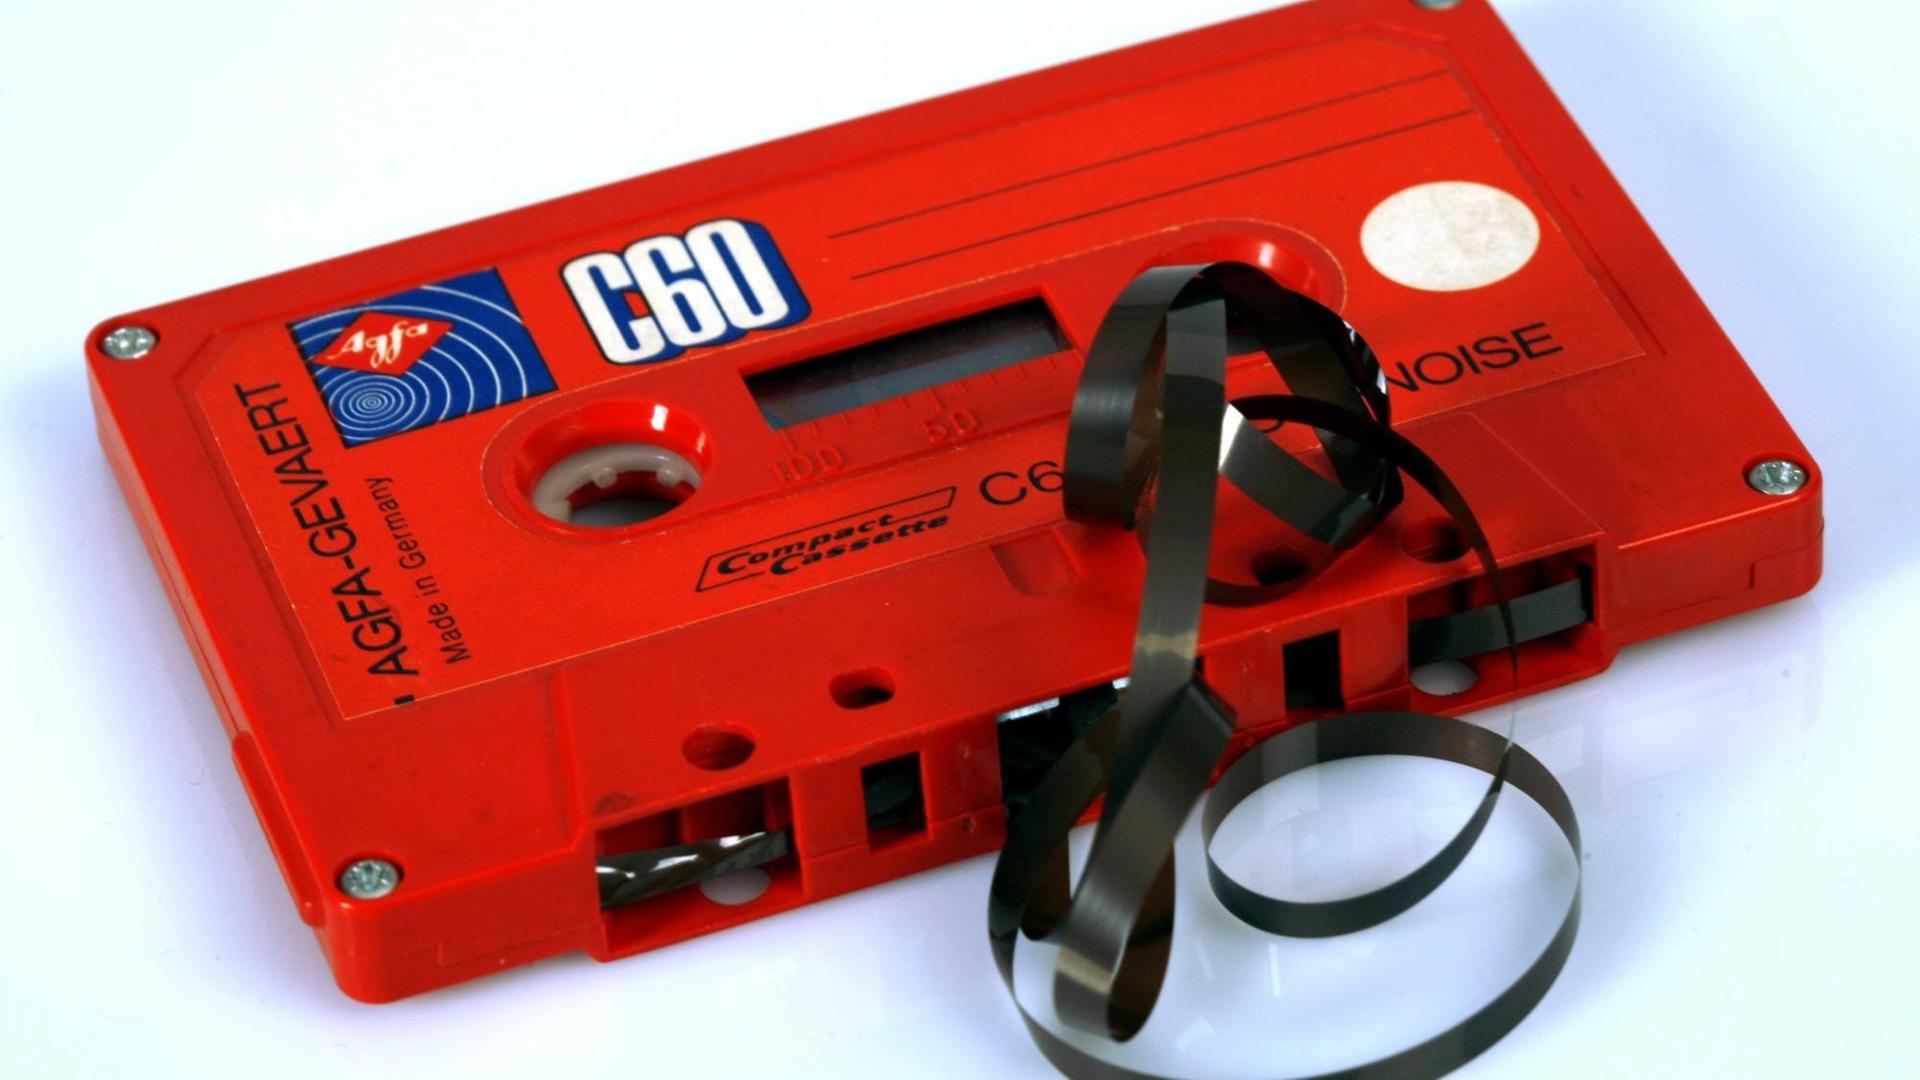 Eine rote Musik-Kassette mit Bandsalat